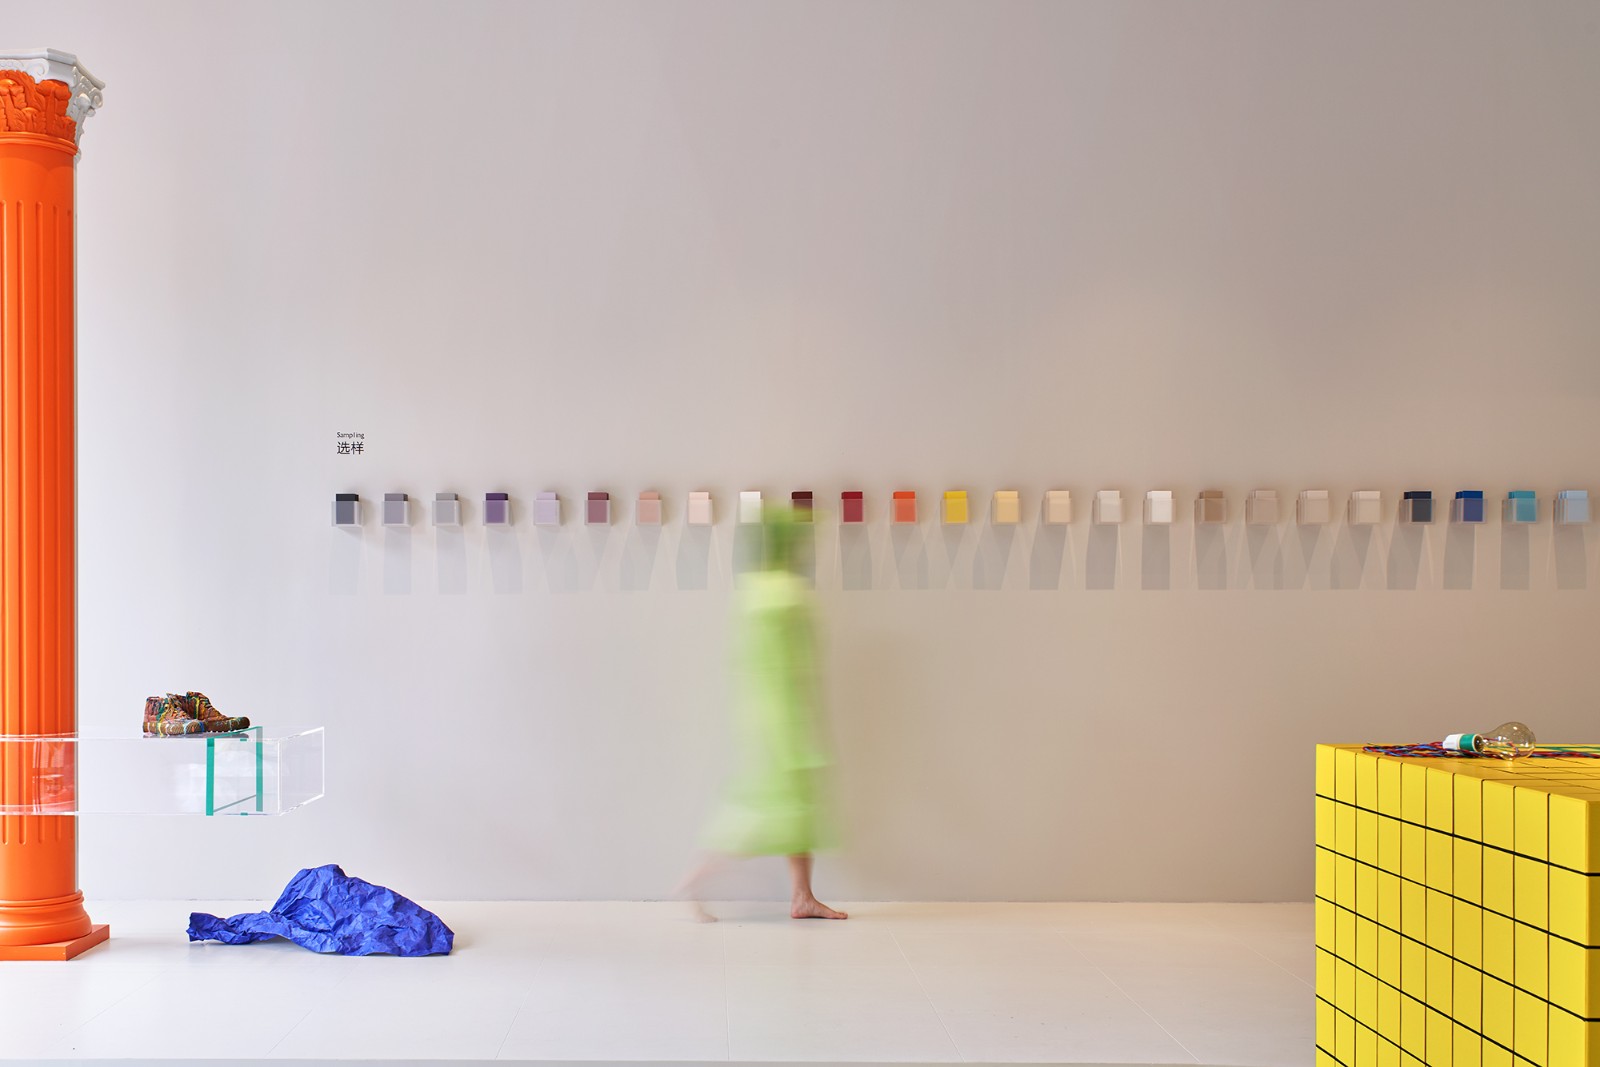 【展厅空间】本杰明·摩尔涂料金华体验中心，一场色彩爆发的随机空间实验-筑讯网